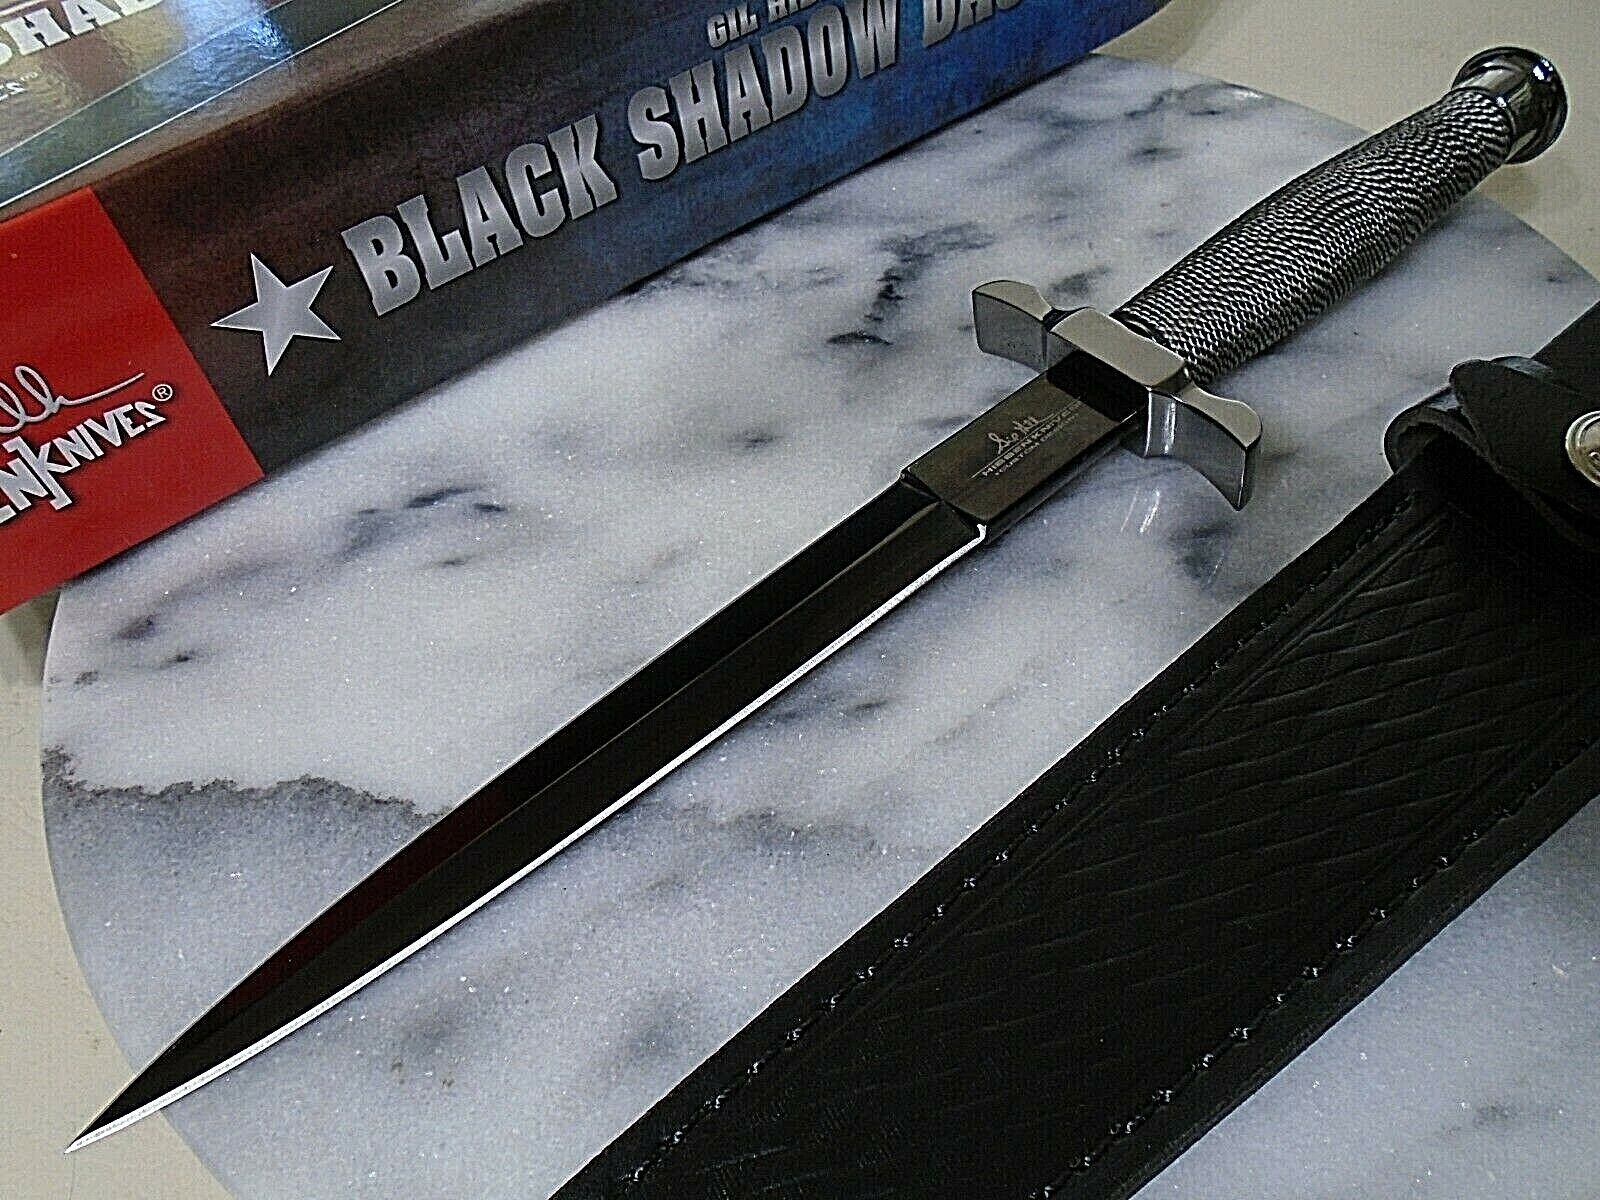 Gil Hibben Black Shadow Dual Edge Dagger Fixed Blade Knife GH0441B Clip Sheath 